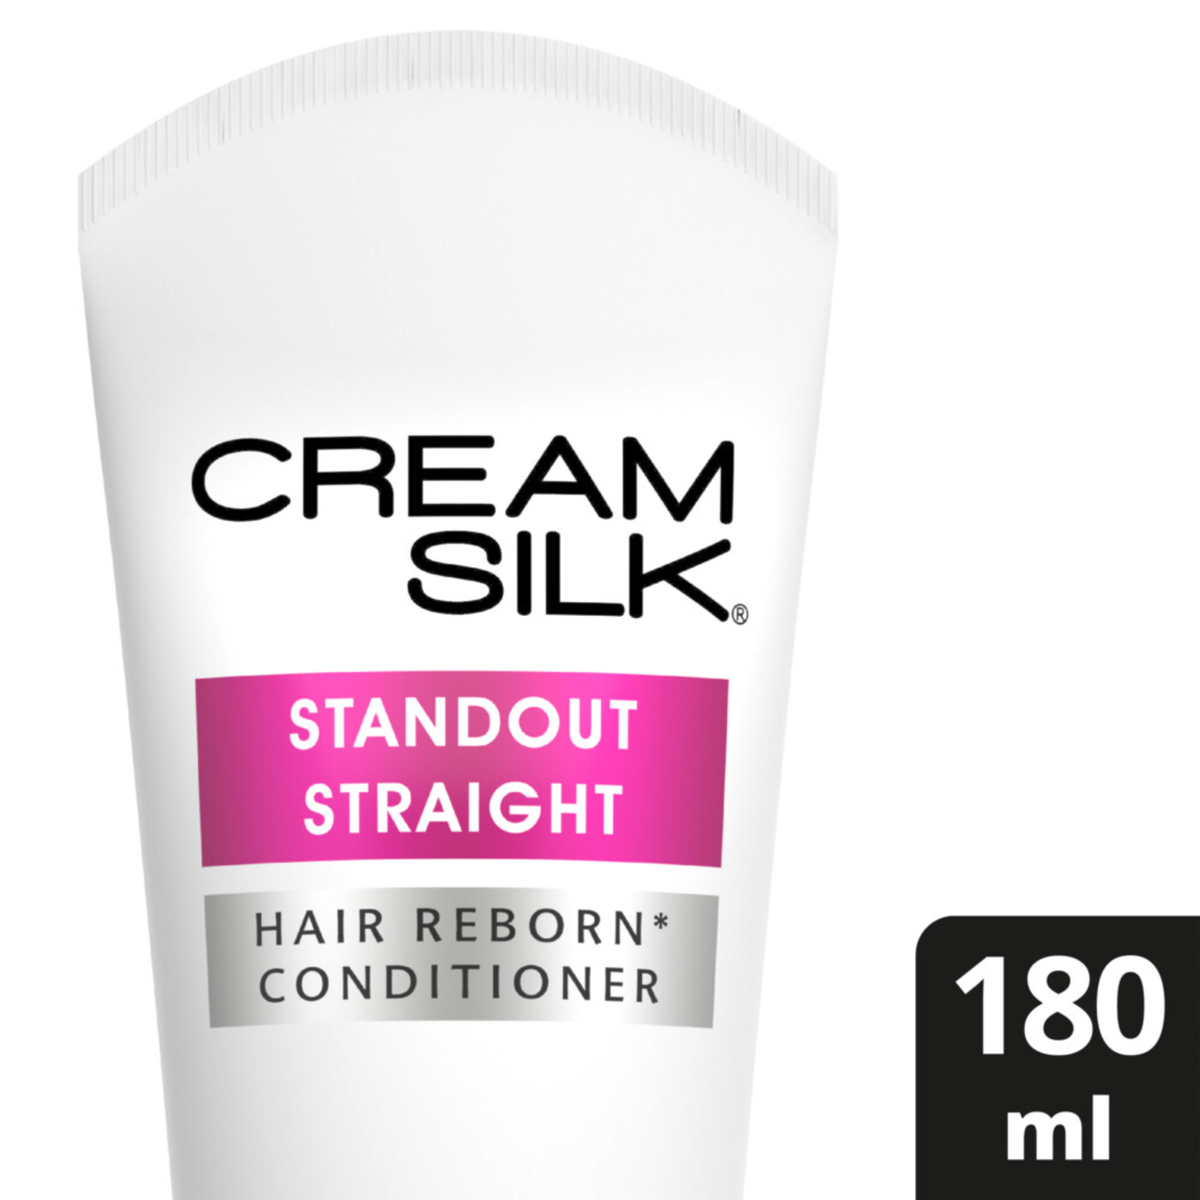 Buy Cream Silk Conditioner Hair Reborn Standout Straight 180 ml Online at Best Price | Conditioners | Lulu KSA in Kuwait